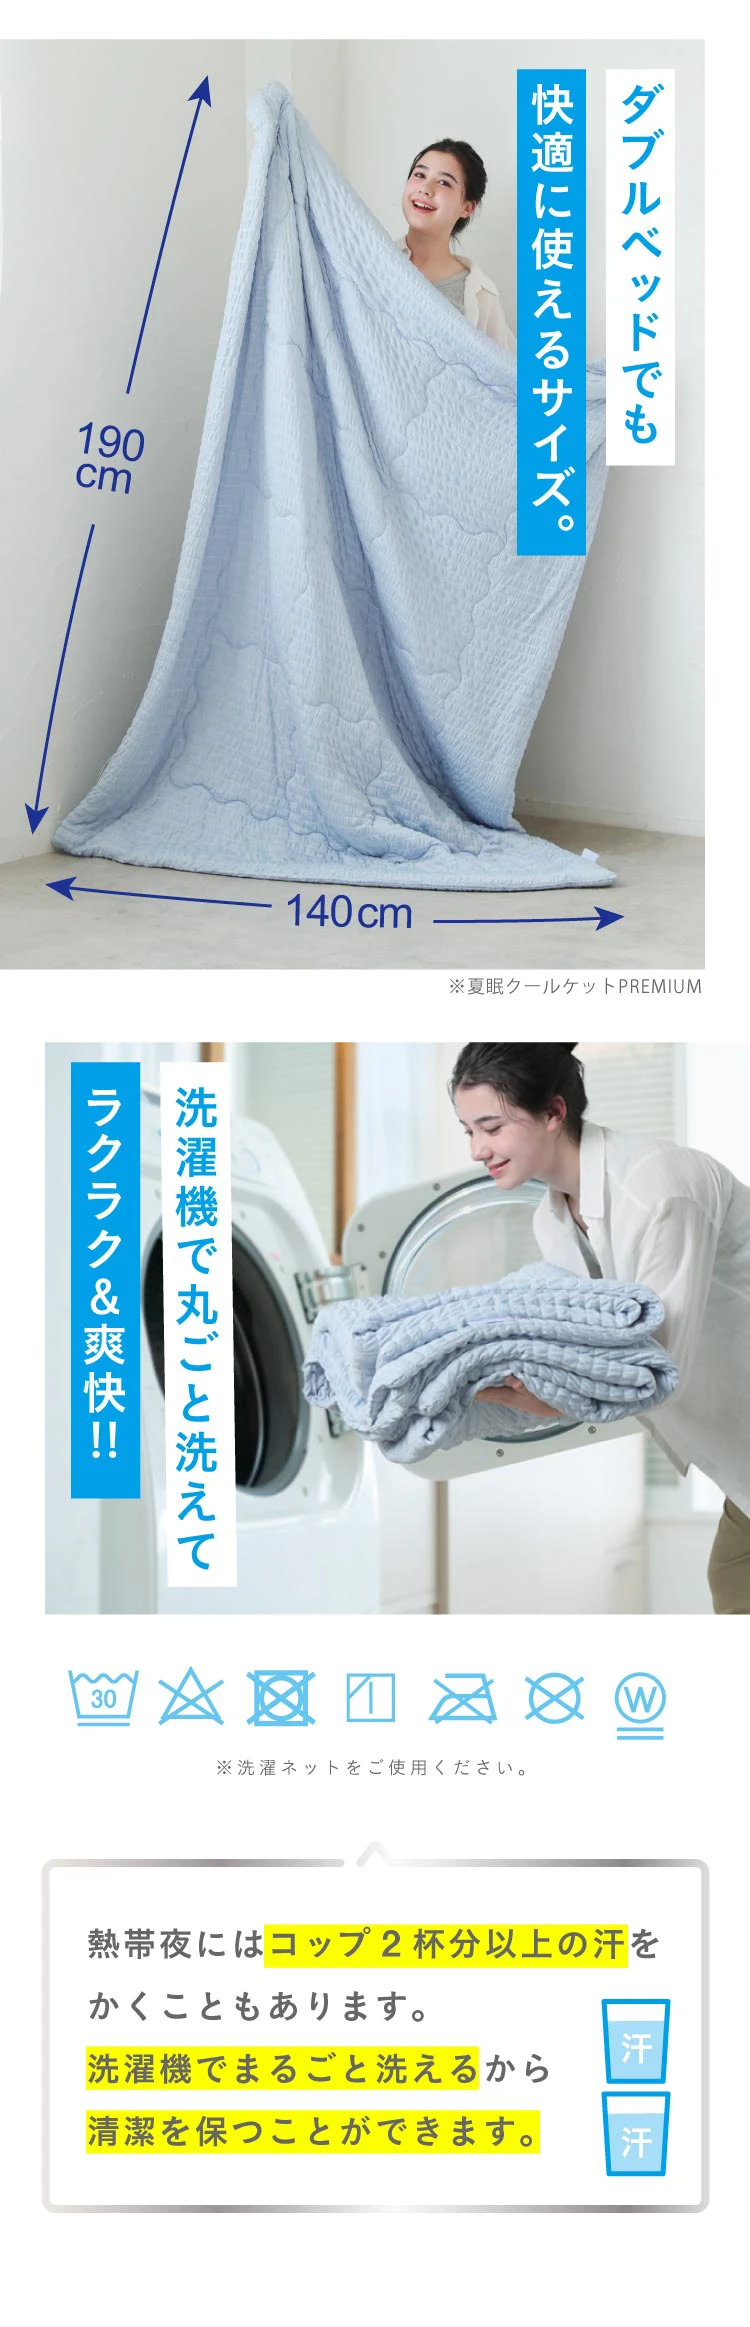 可當雙人床使用的尺寸，可完全放入洗衣機清洗，輕鬆清爽